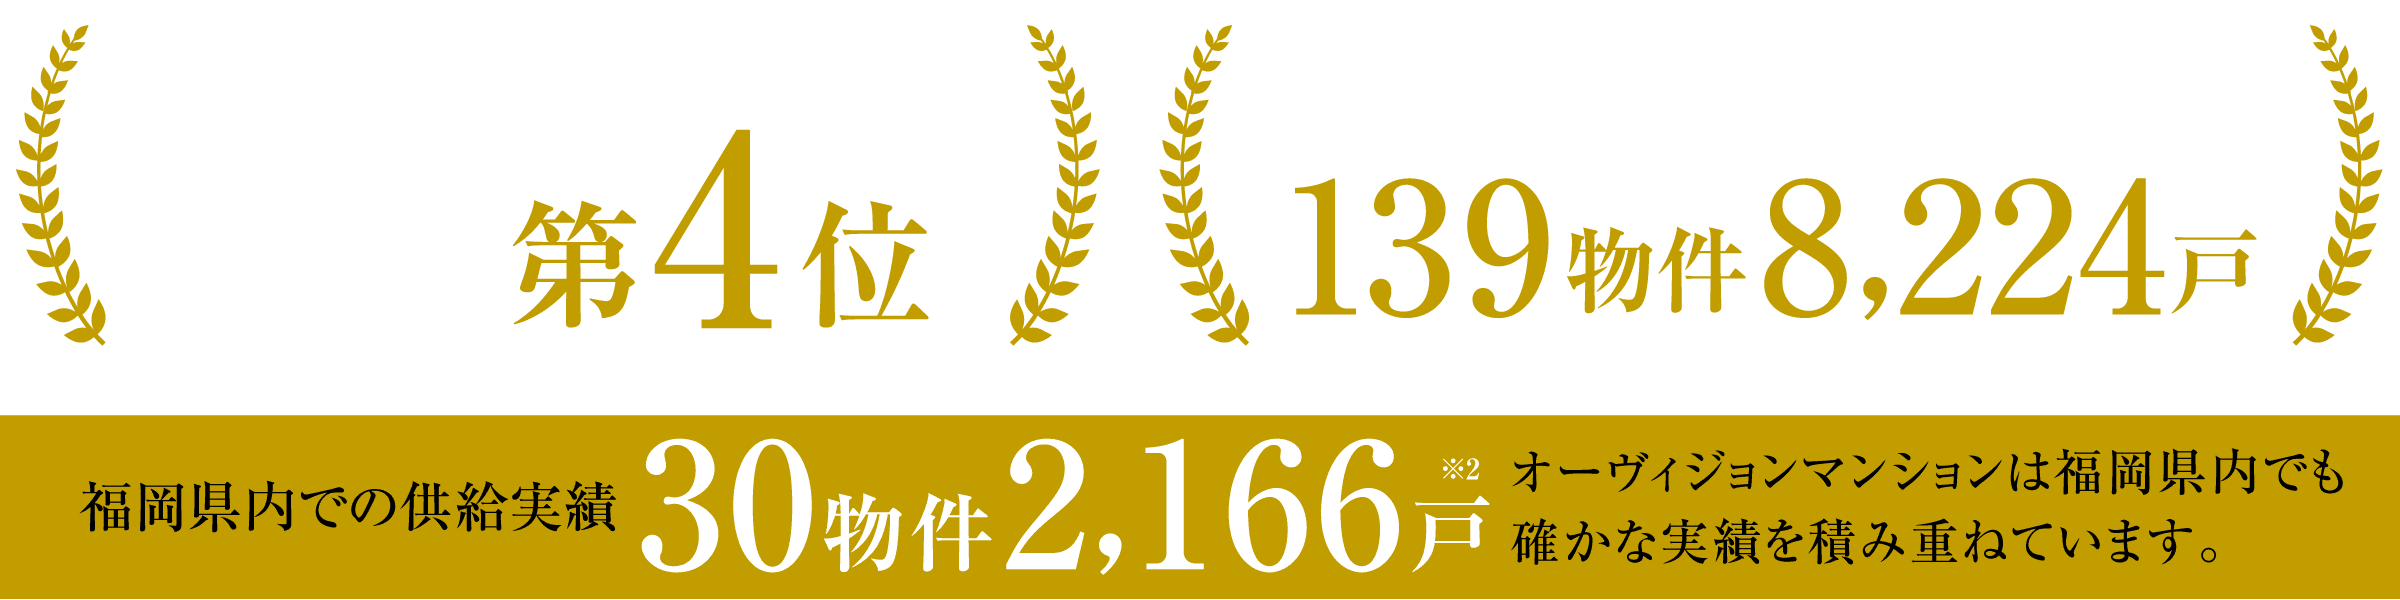 福岡県内での供給実績29物件2,124戸